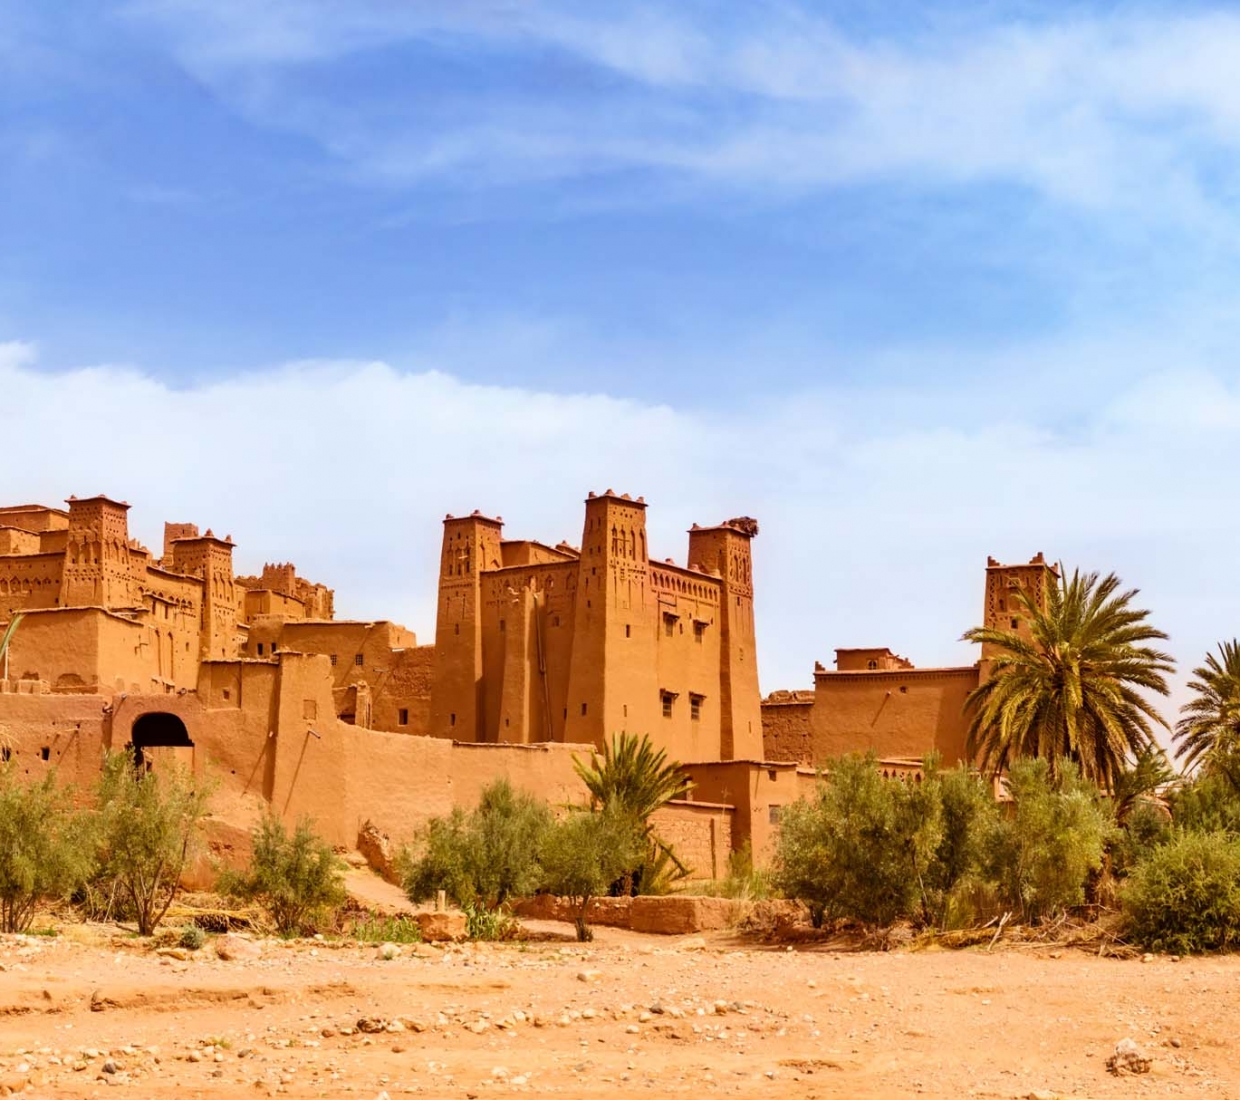 Hotéis boutique, hotéis de charme e turismo rural Ouarzazate